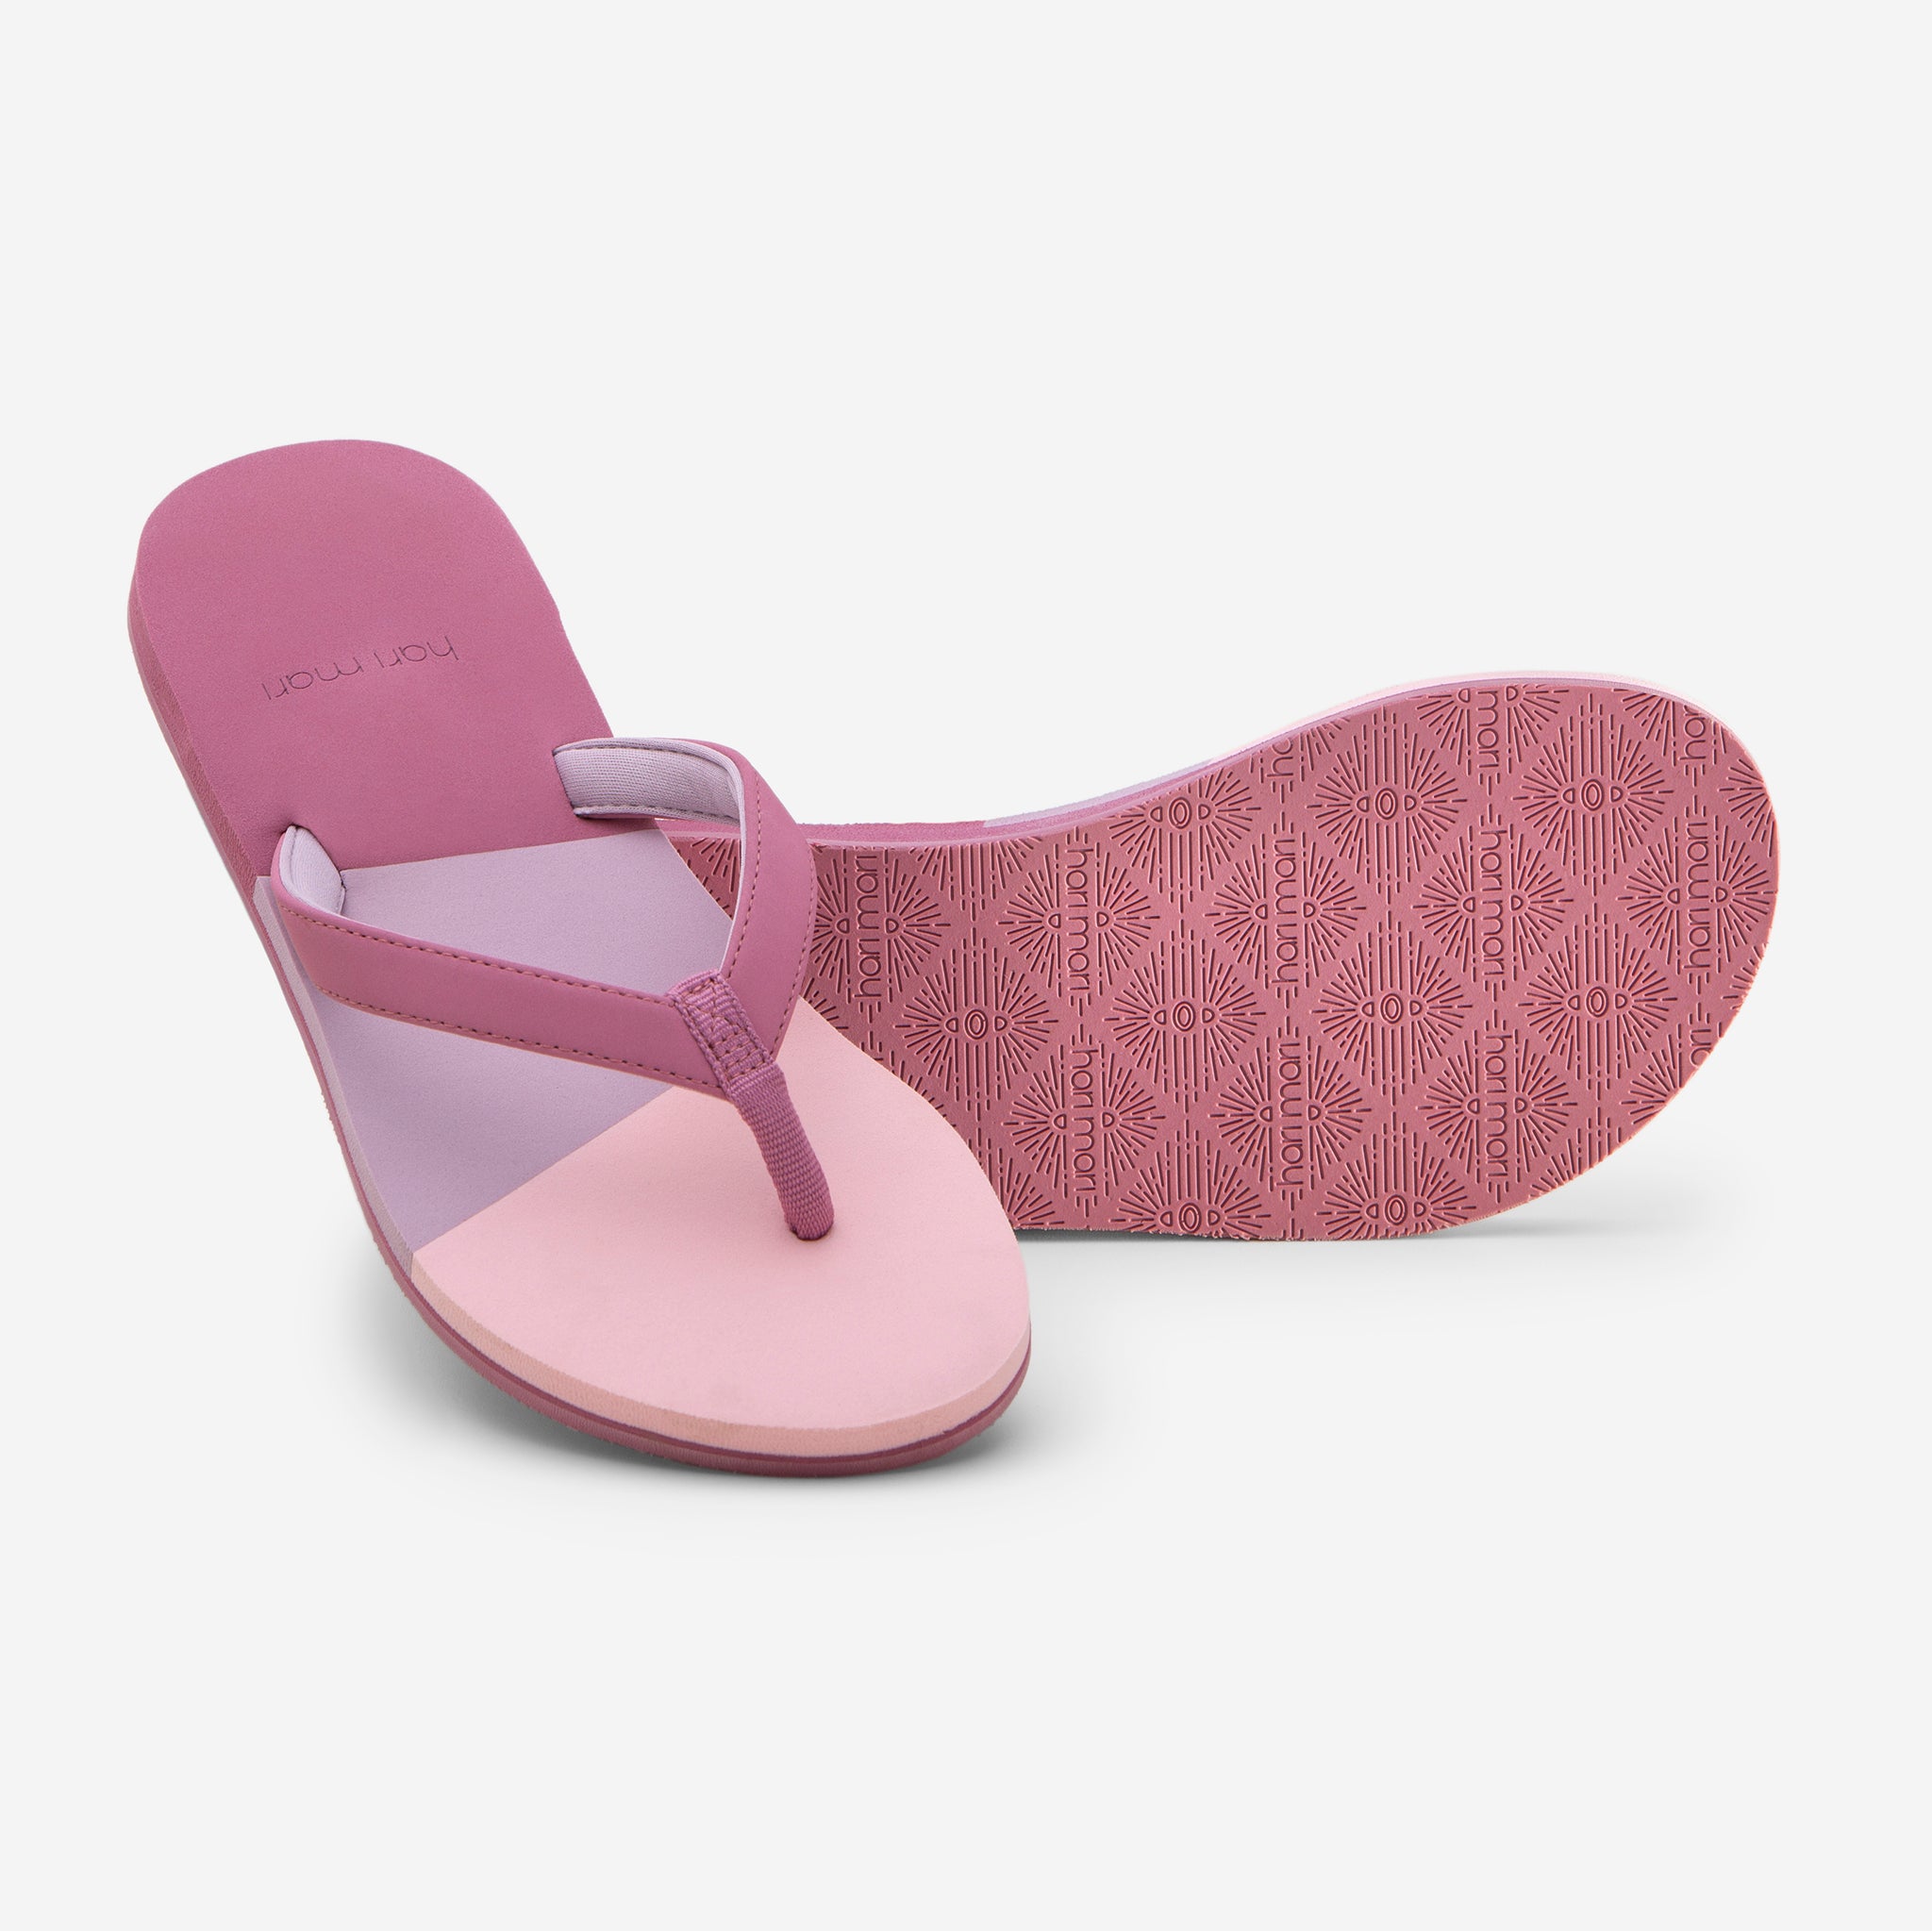 New Riverberry Yoga Flip Flops Yoga Mat Summer Sandals Women's Pink Size 7M